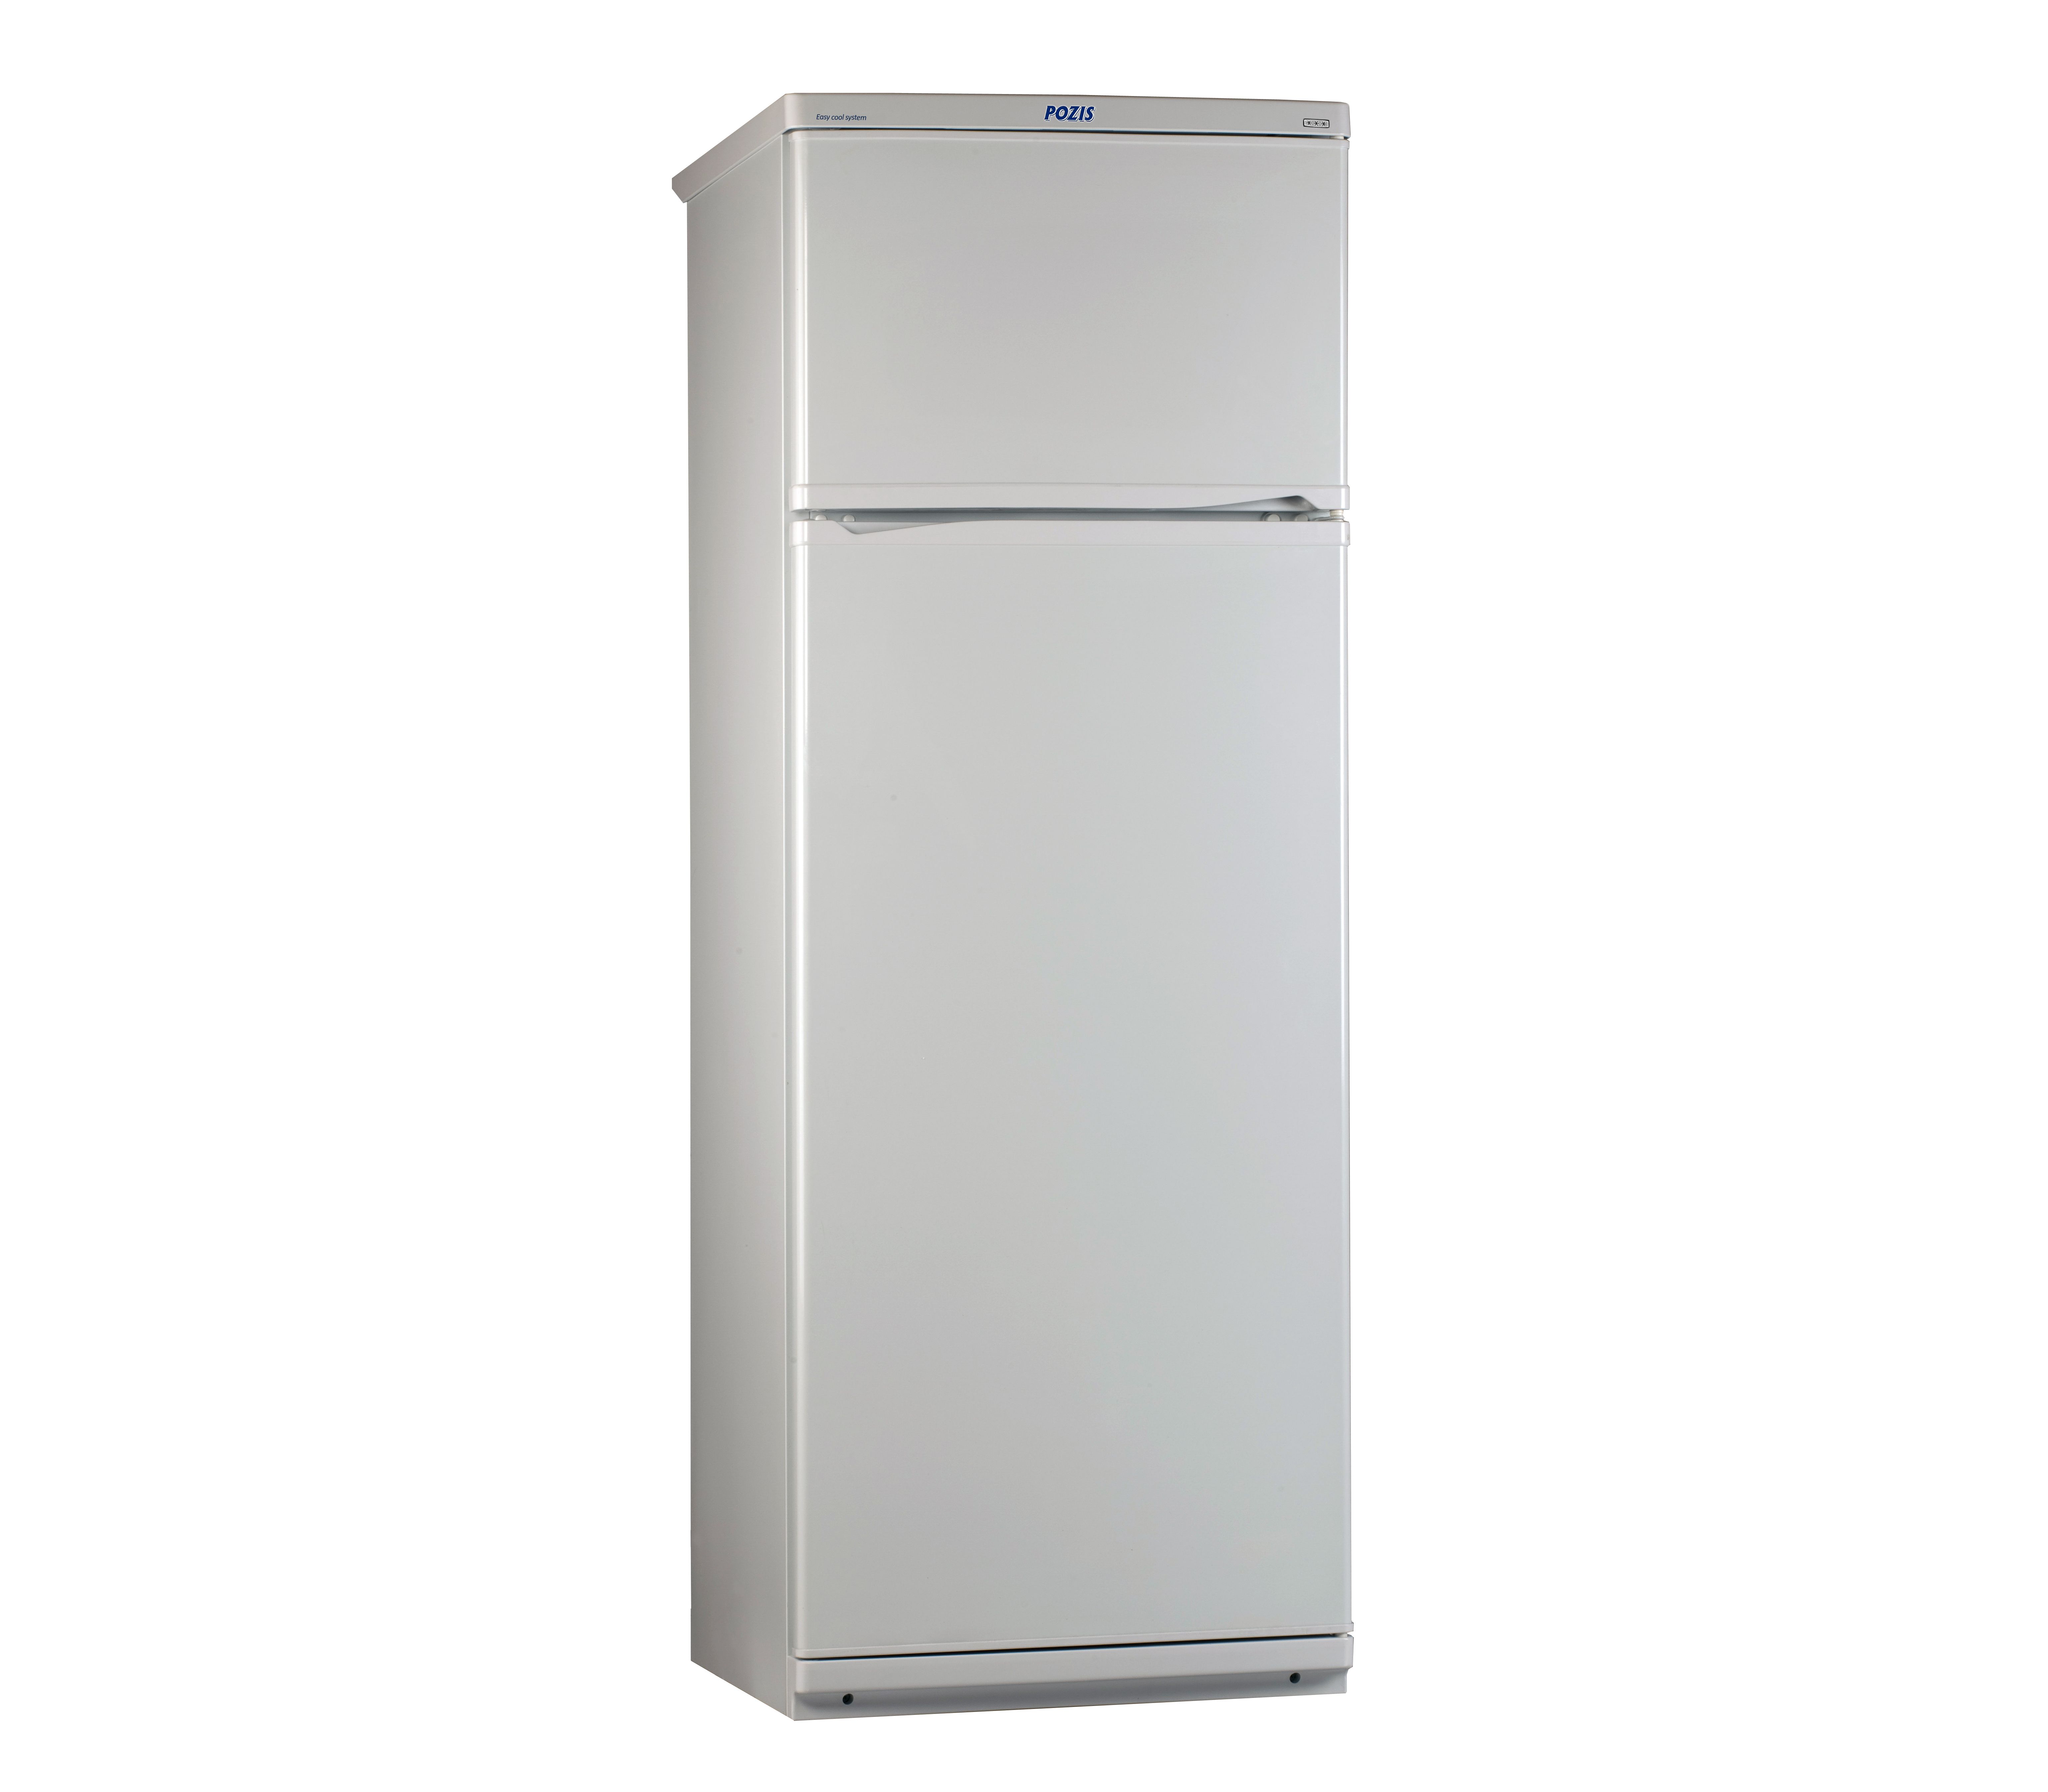 Спб купить холодильник недорого двухкамерный. Холодильник Novex ntd015552s. Холодильник Позис мир 244-1. Холодильник Pozis мир-244-1 White. Холодильник двухкамерный "Pozis мир-244-1 ".